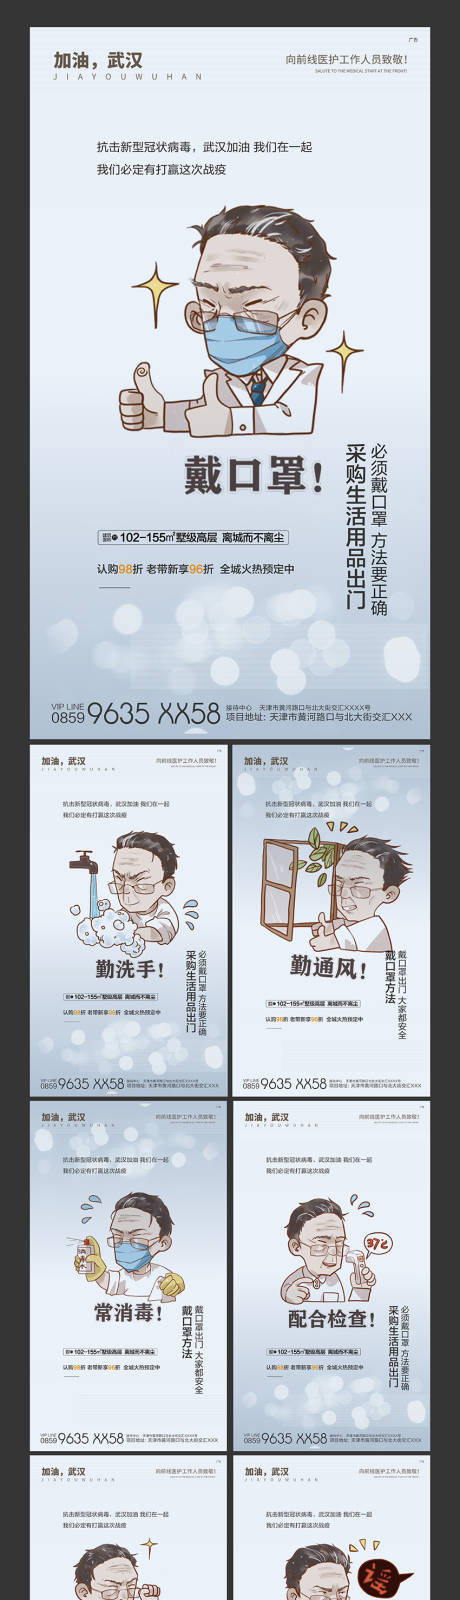 武汉加油抗疫情卡通插画系列海报